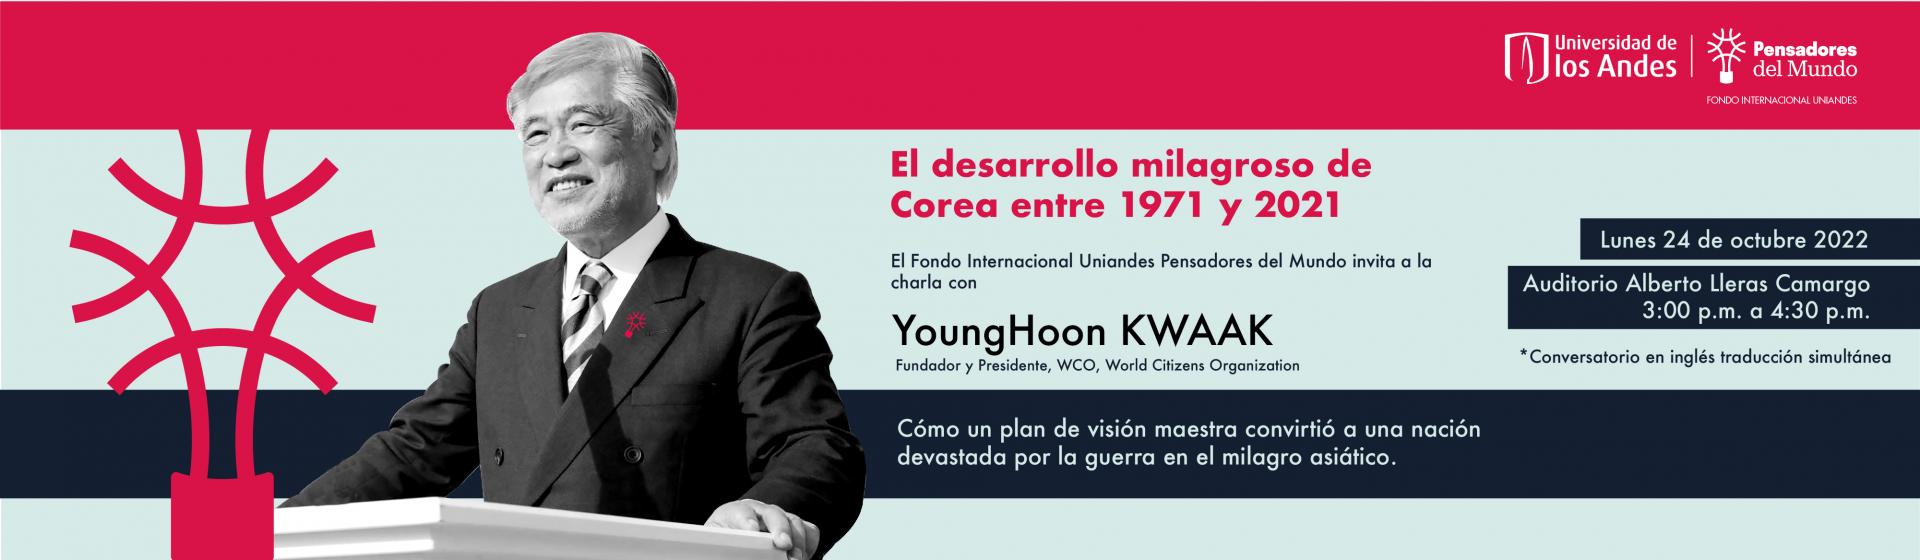 Pensadores del Mundo visita del Profesor YoungHook KWAAK